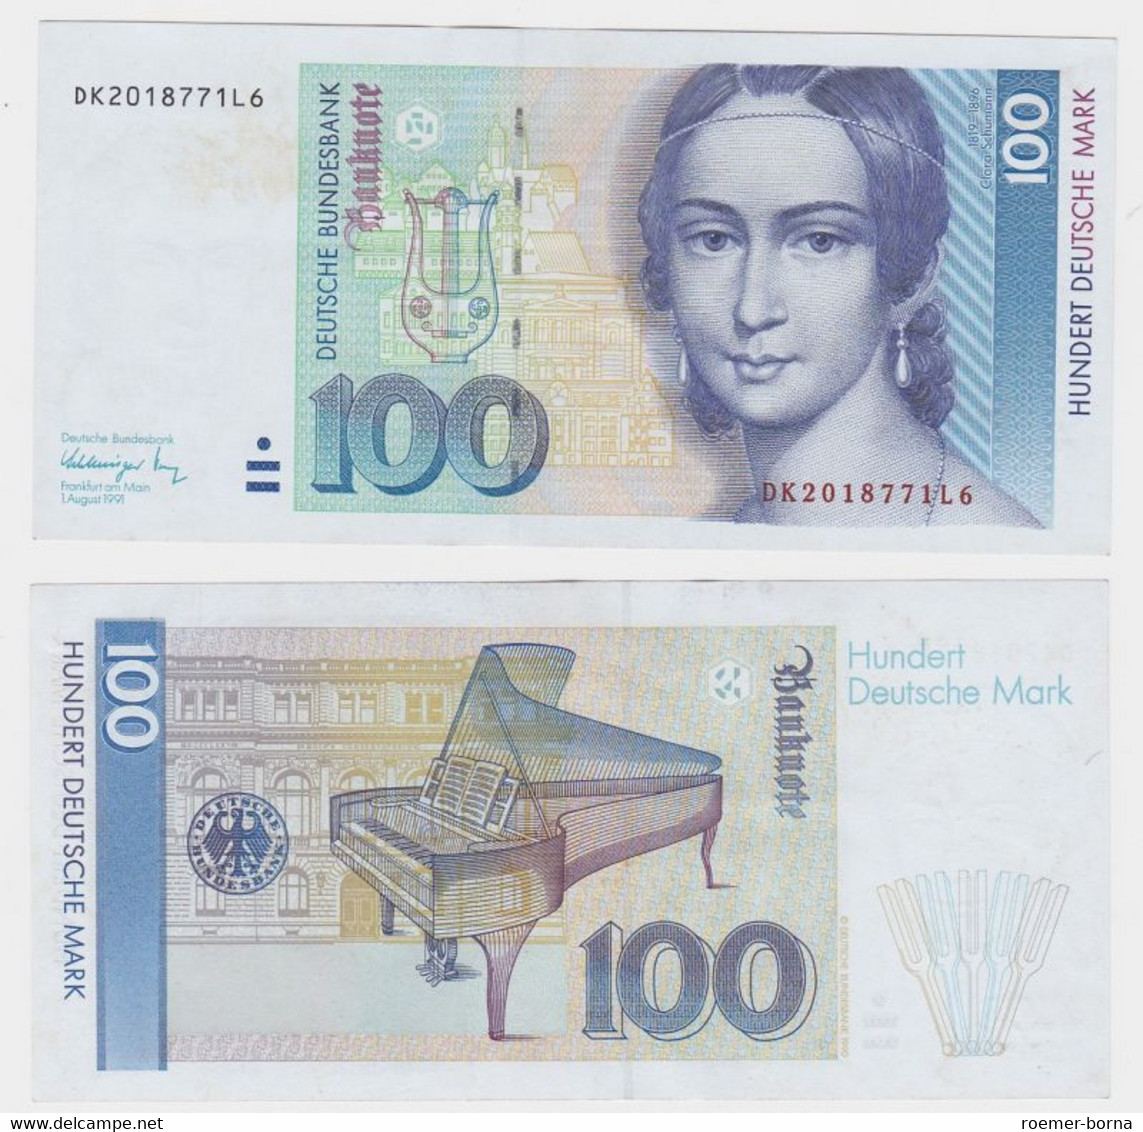 T146102 Banknote 100 DM Deutsche Mark Ro 300a Schein 1.Aug. 1991 KN DK 2018771L6 - 100 Deutsche Mark